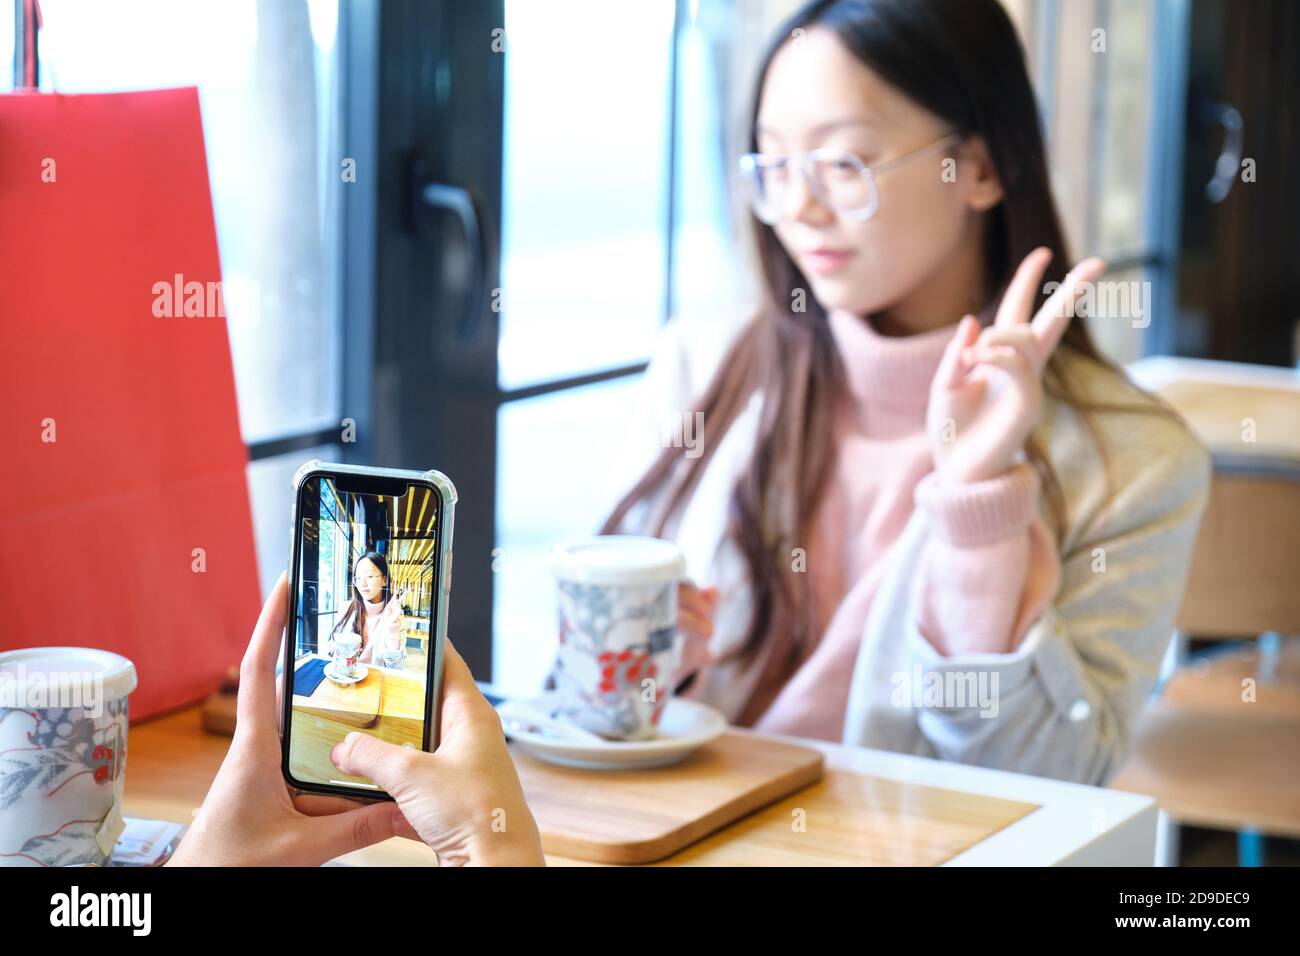 Junge kaukasische Frau, die ein Foto mit ihrem Smartphone von ihrem asiatischen Freund. Freunde in einem Café. Stockfoto